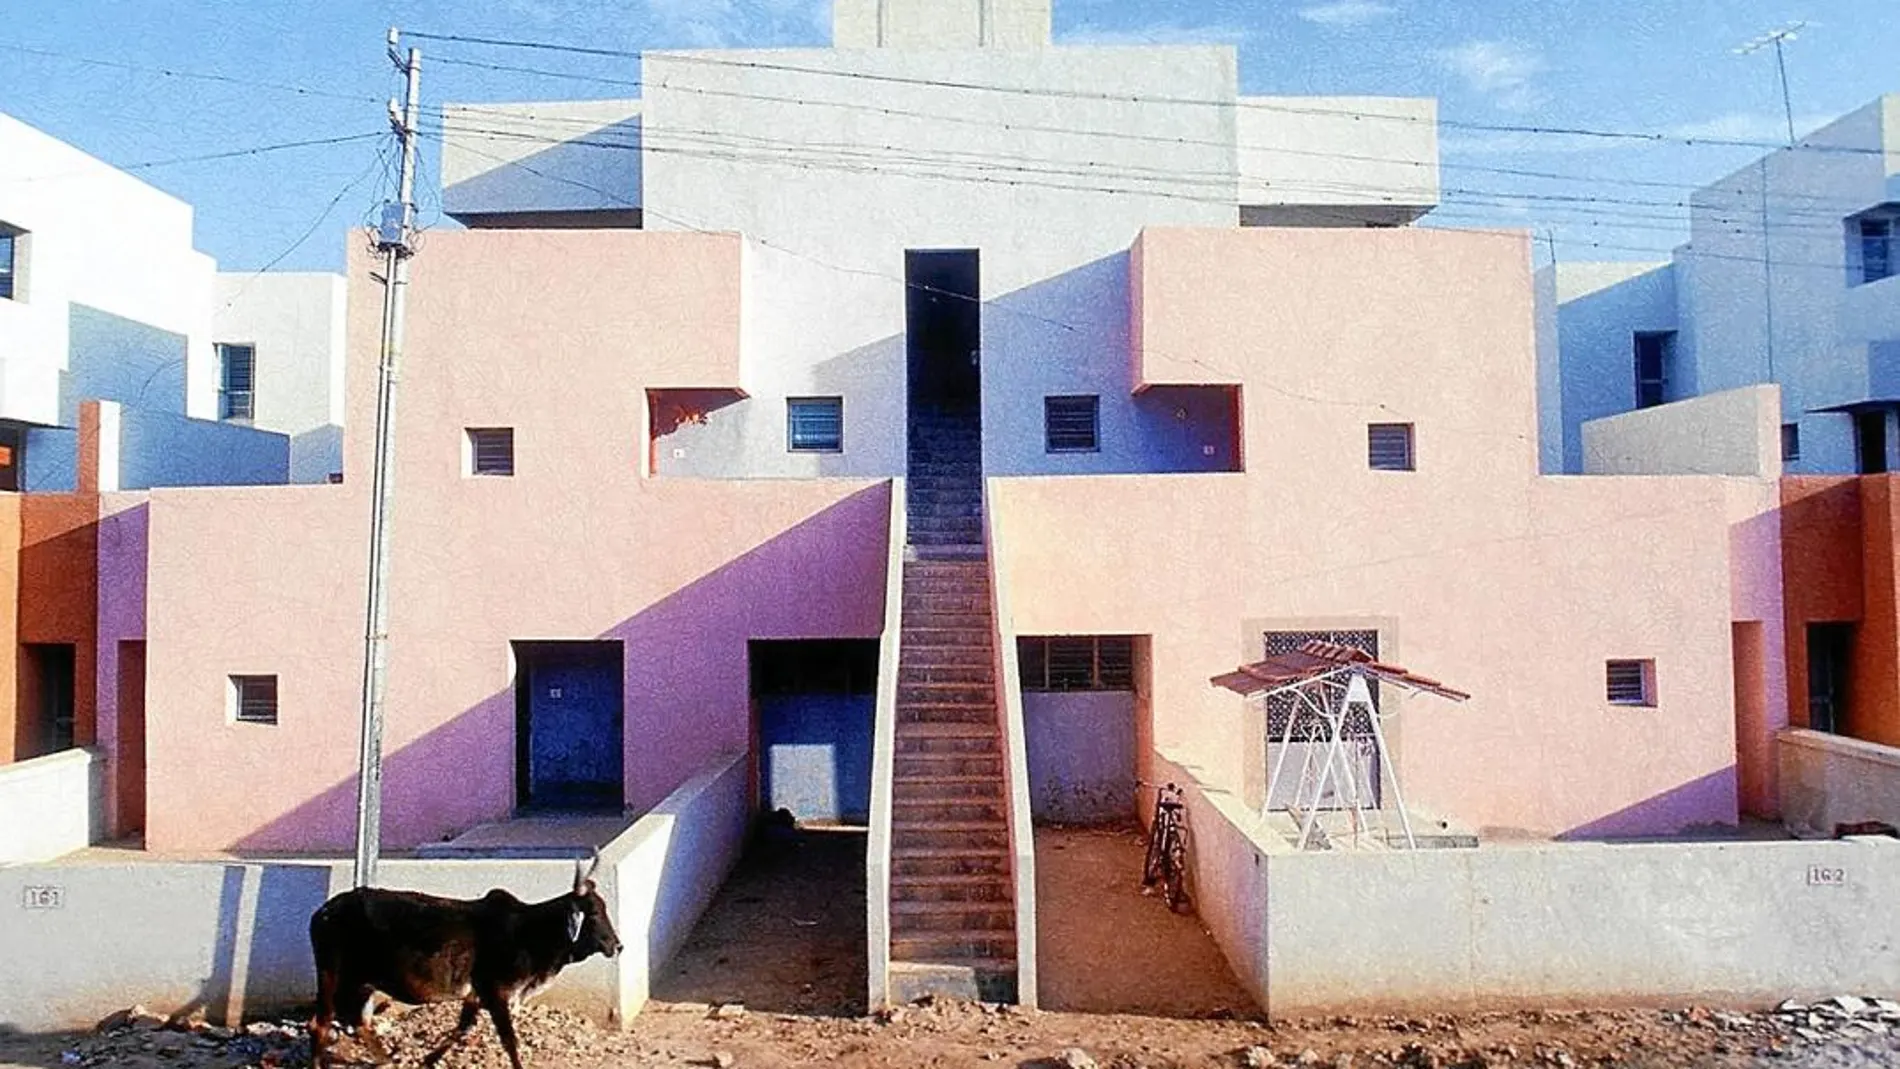 Uno de los proyectos más significativos de Balkrishna Doshi es el edificio de viviendas de Life Insurance Corporation, que levantó en Ahmedabad, India, en 1973.